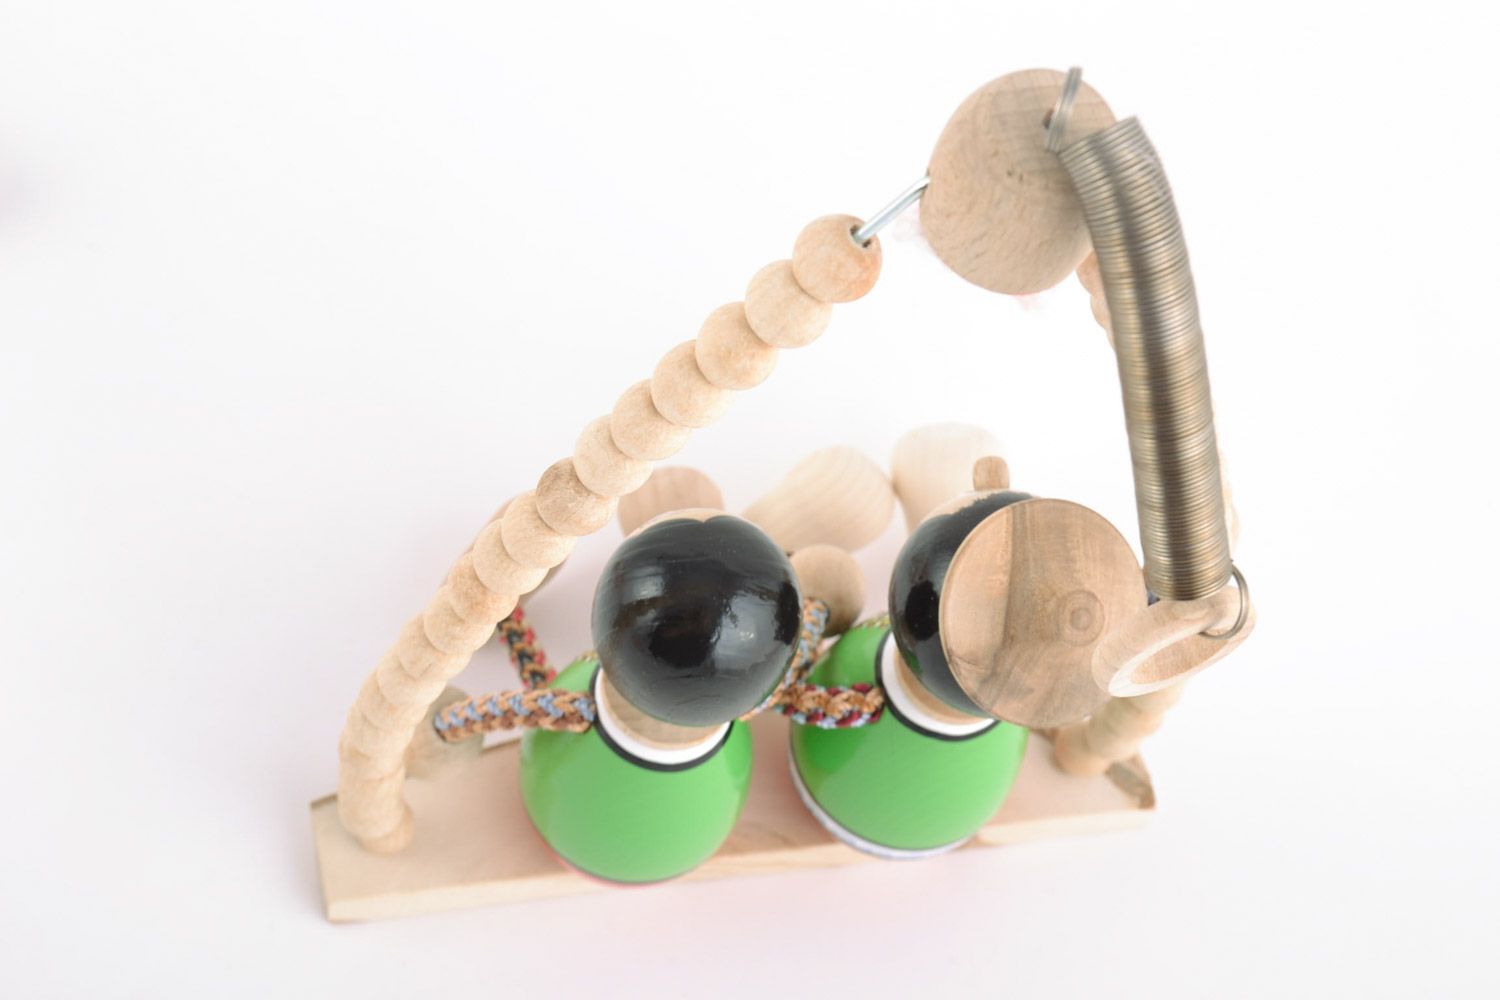 Детская игрушка на пружинке ручной работы из дерева расписанная эко красками фото 4